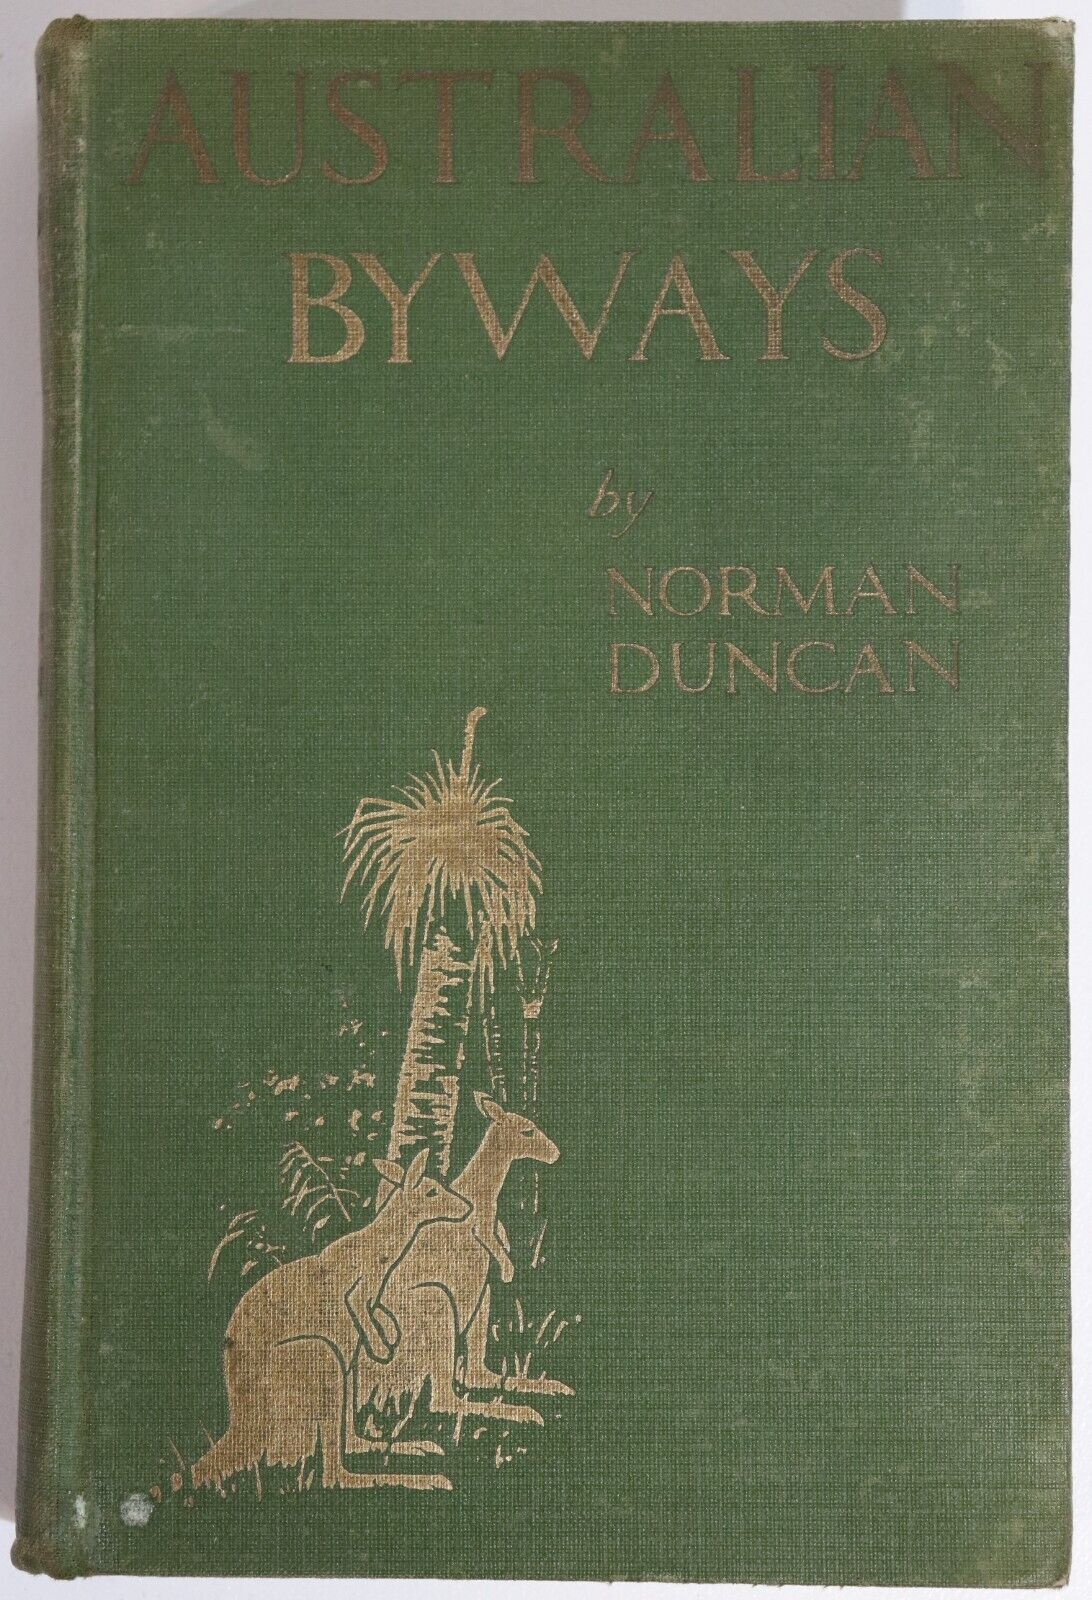 Australian Byways by Norman Duncan - 1915 - Australian History Book